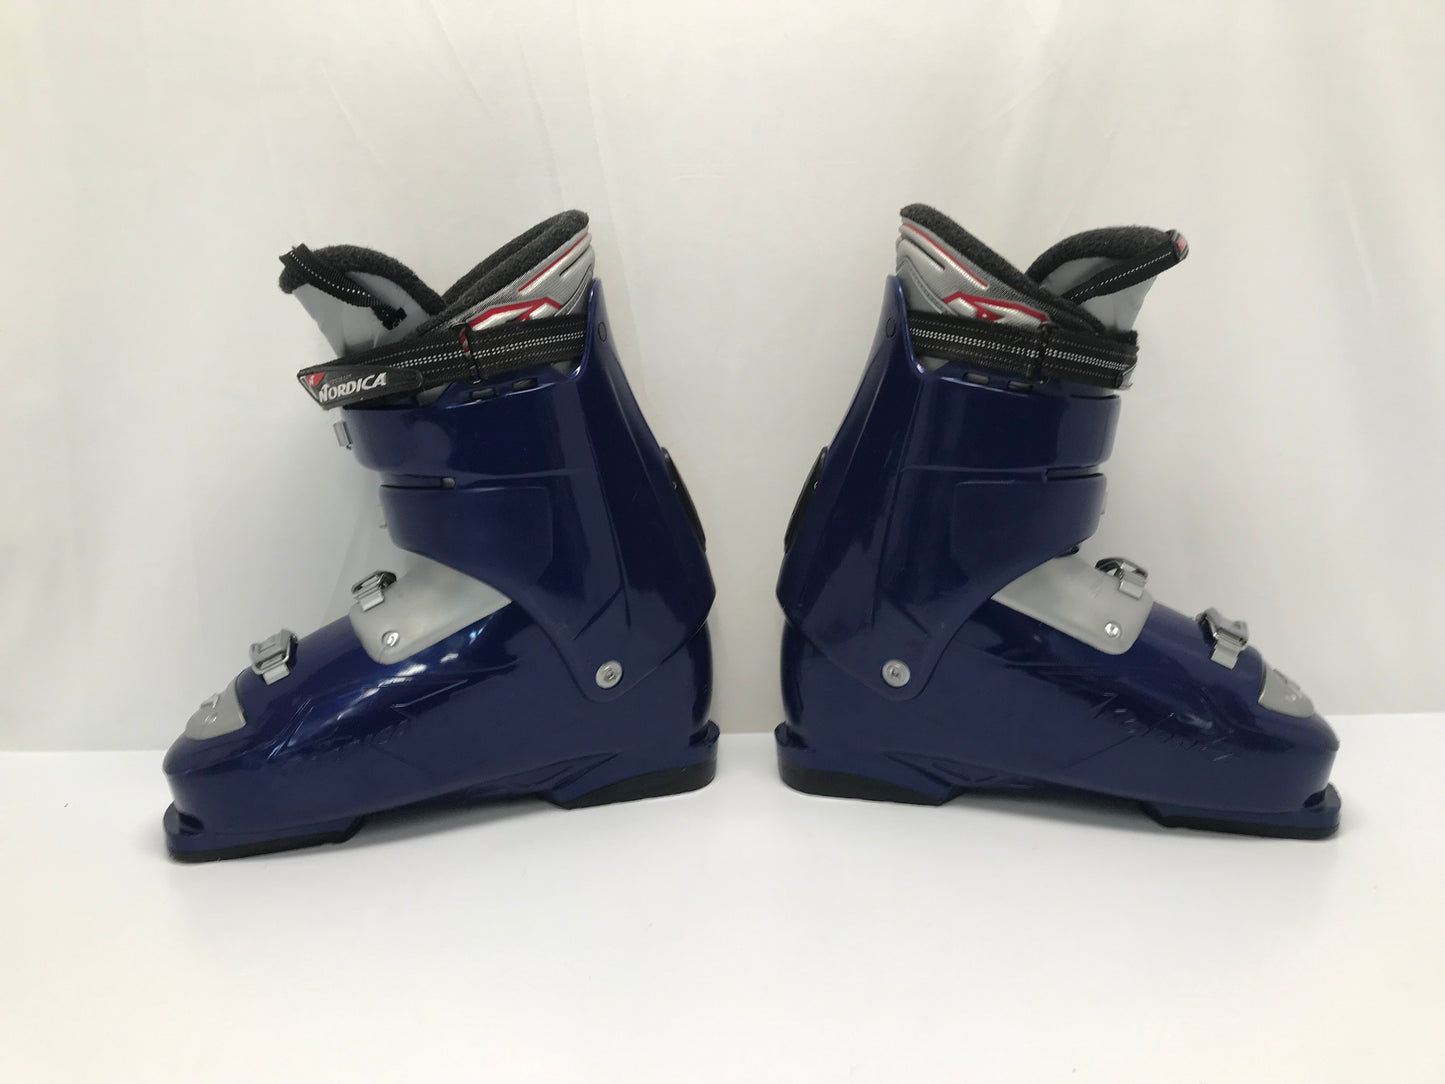 Ski Boots Mondo Size 29.0 Men's Size 11 335 mm Nordica Blue Grey New Demo Model